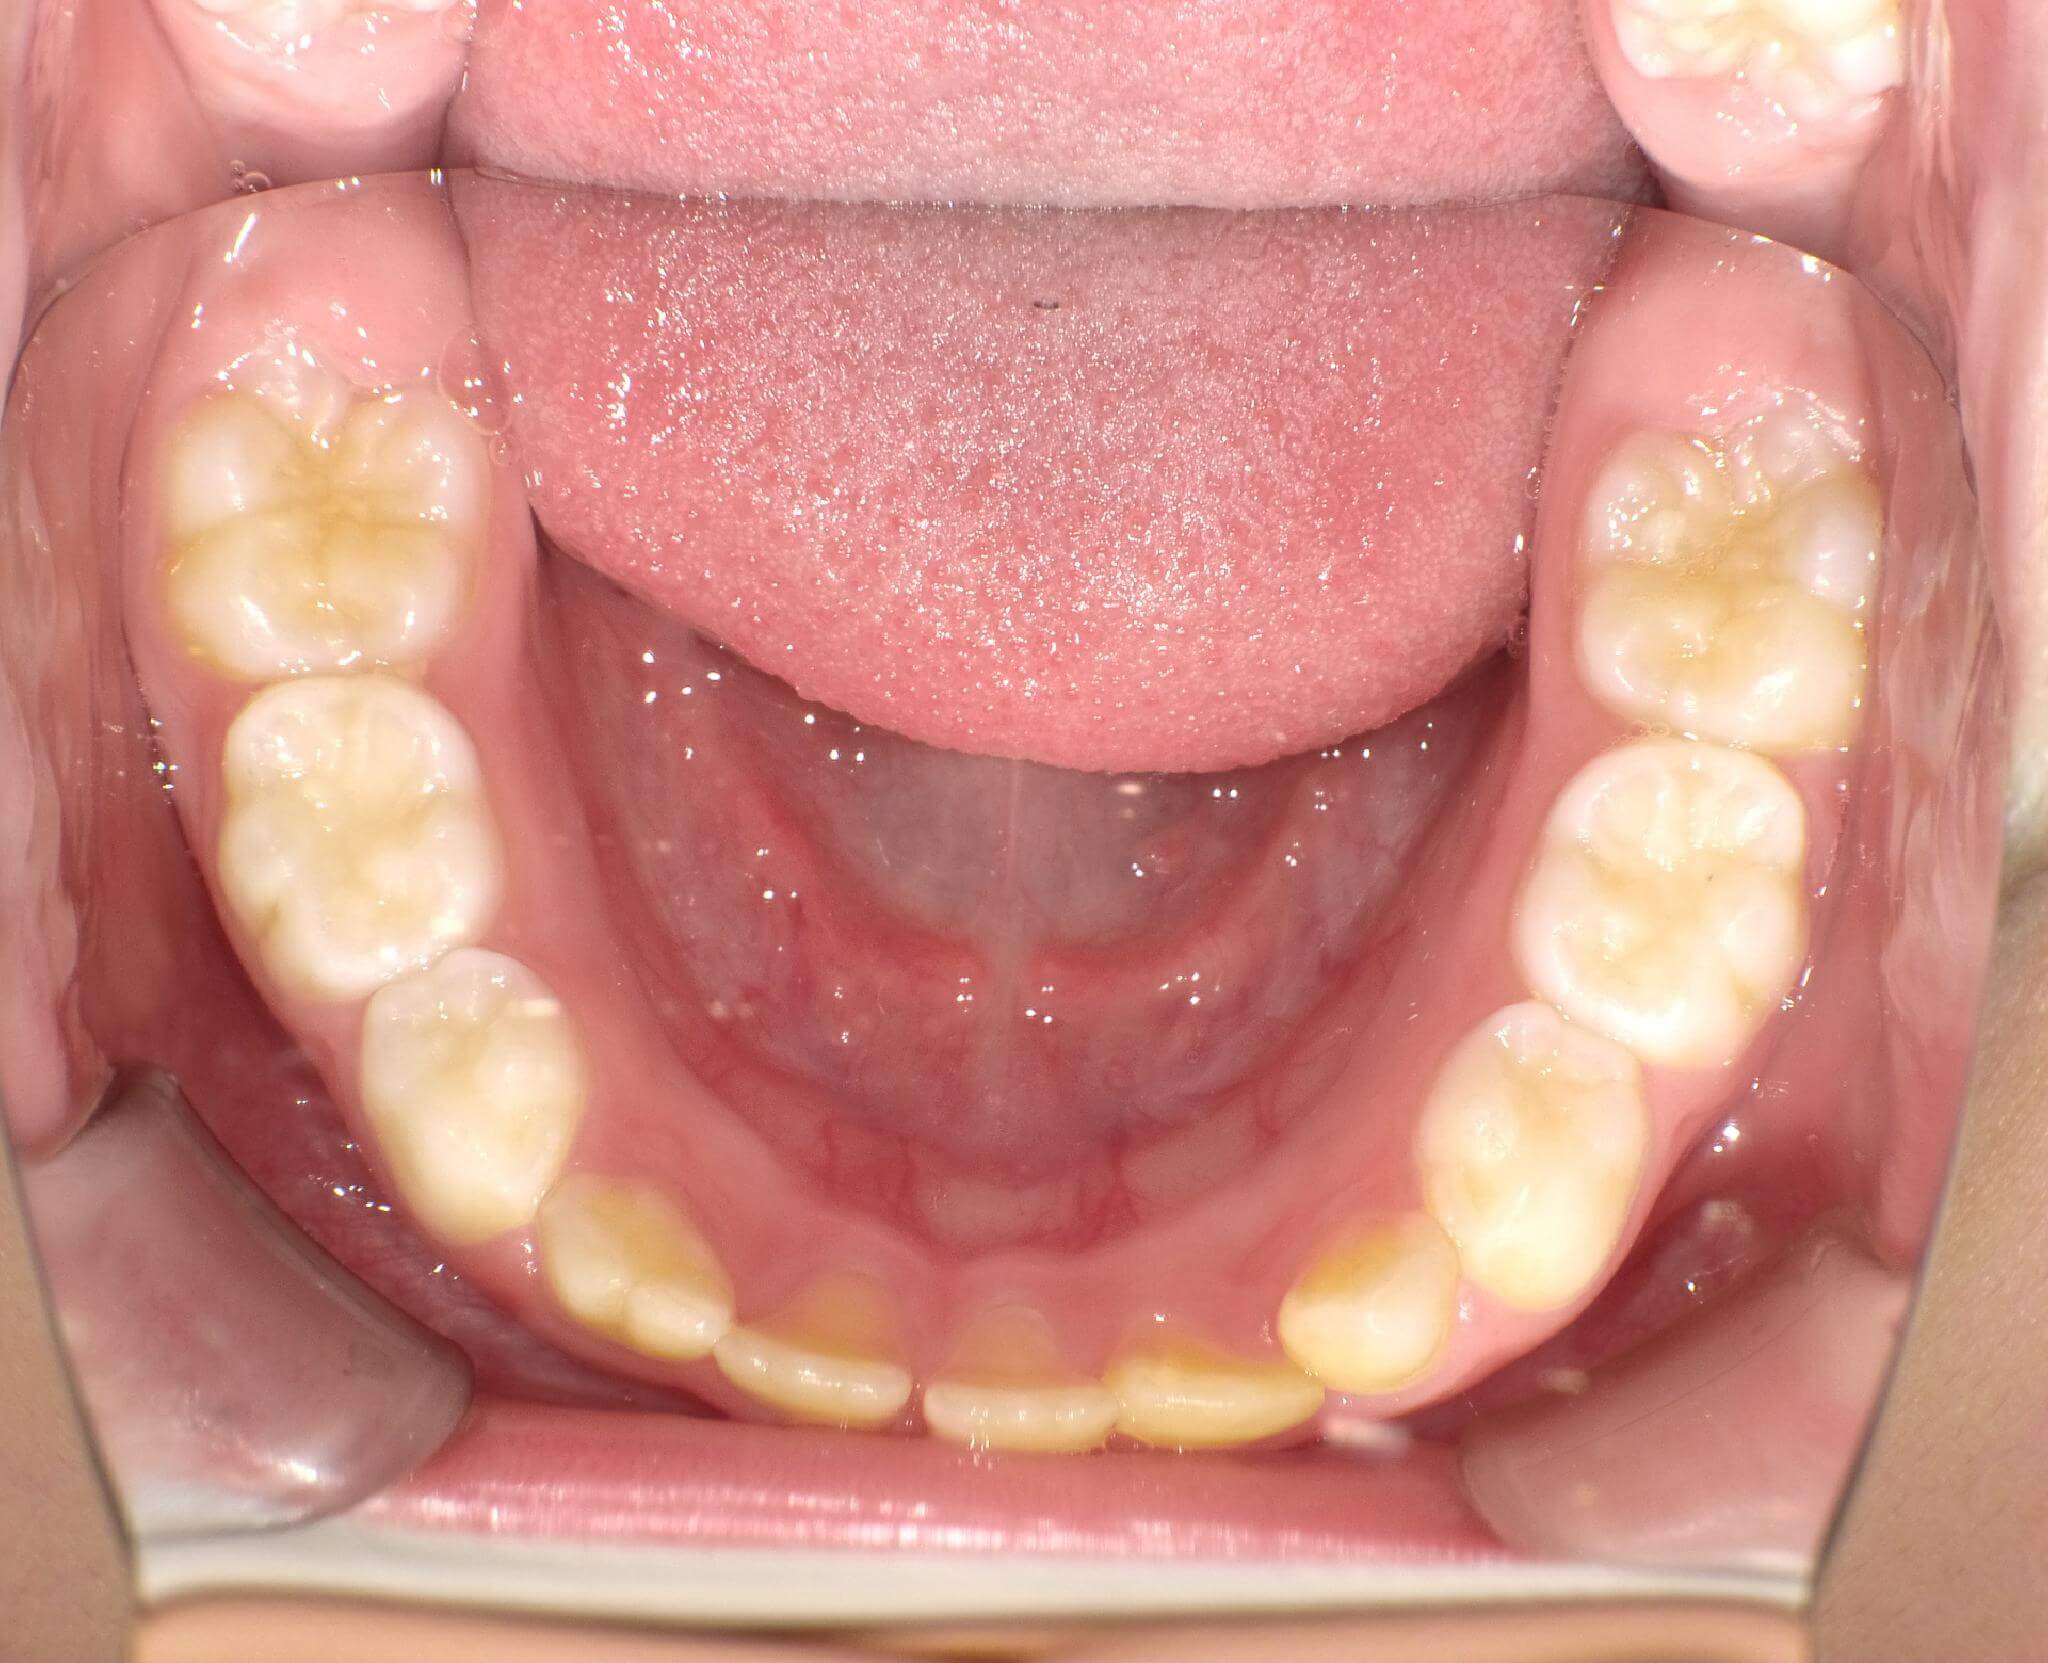 下の歯が装置は入れておらず今後マウスピースを入れることで前方へ成長する。